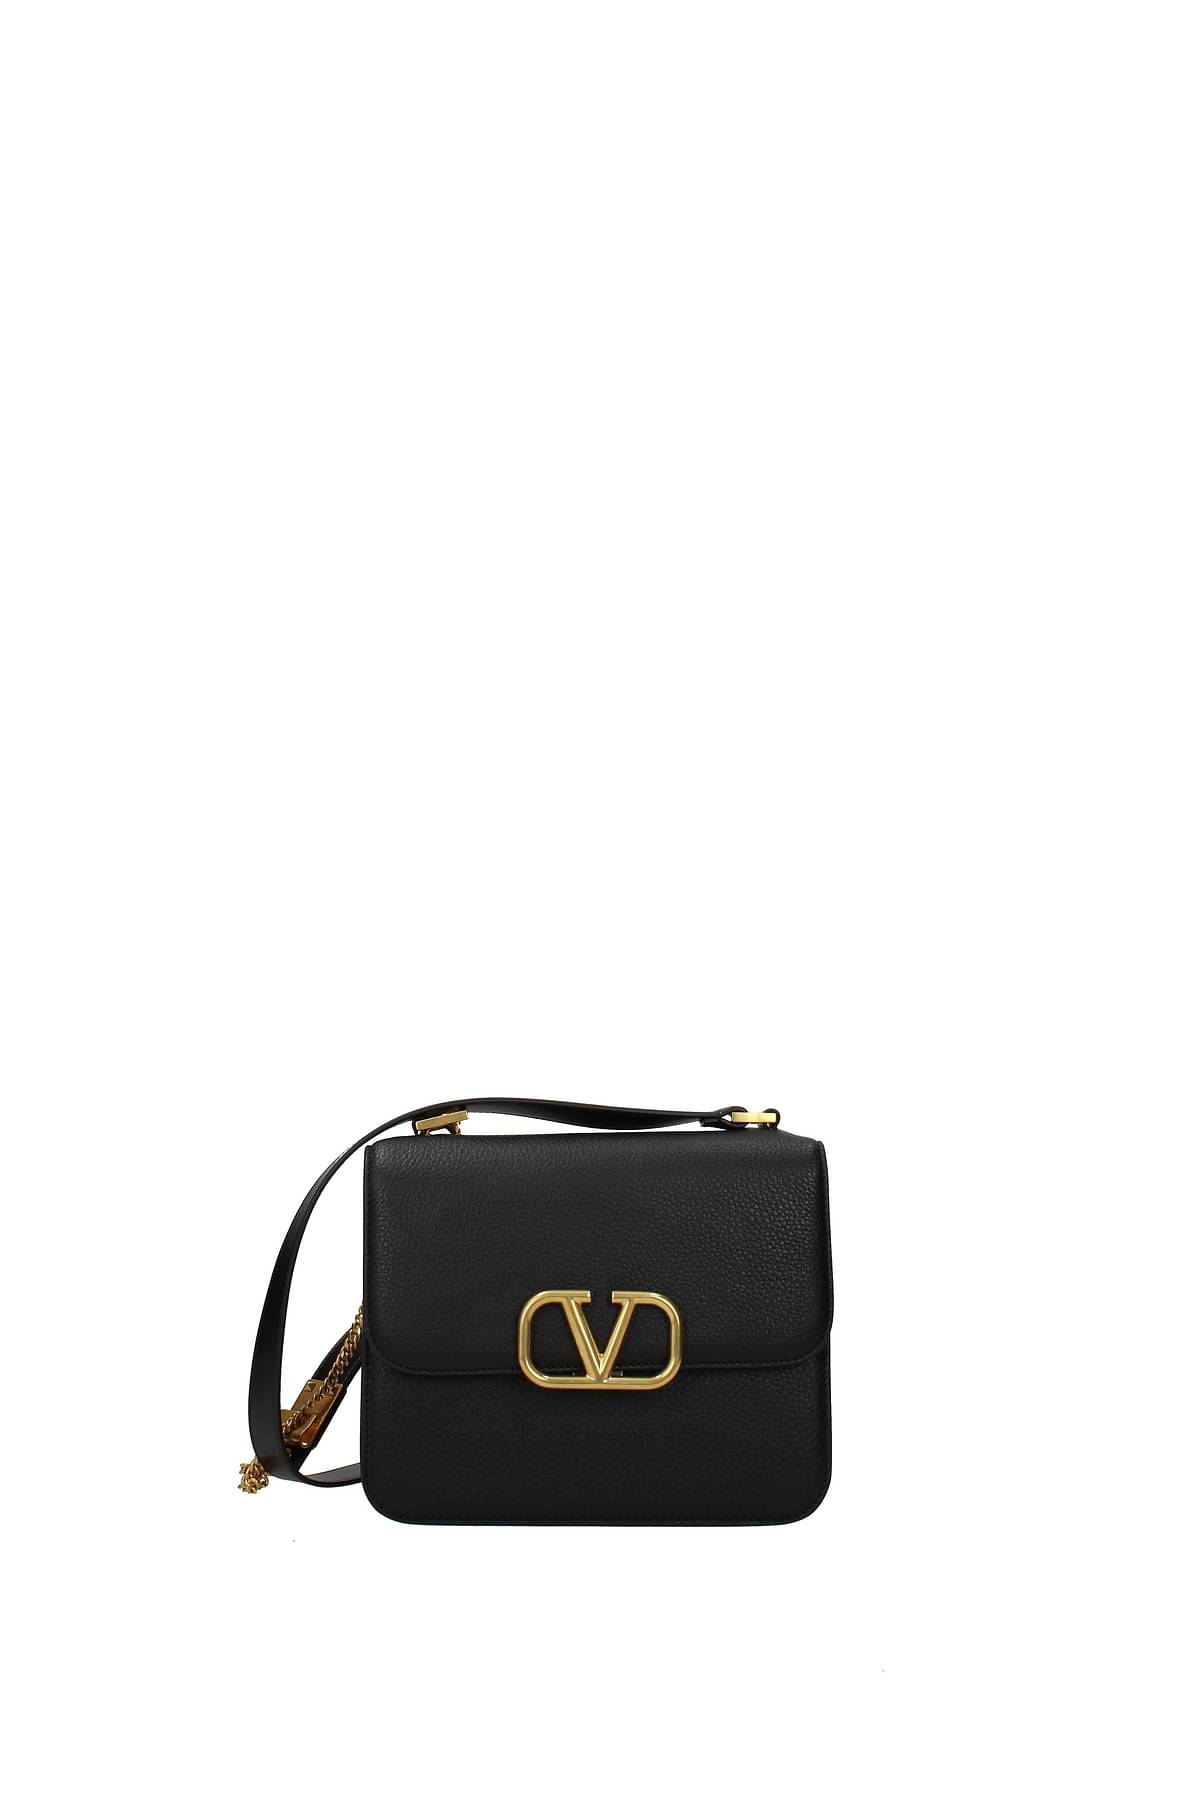 Vsling leather crossbody bag Valentino Garavani Black in Leather - 32399675